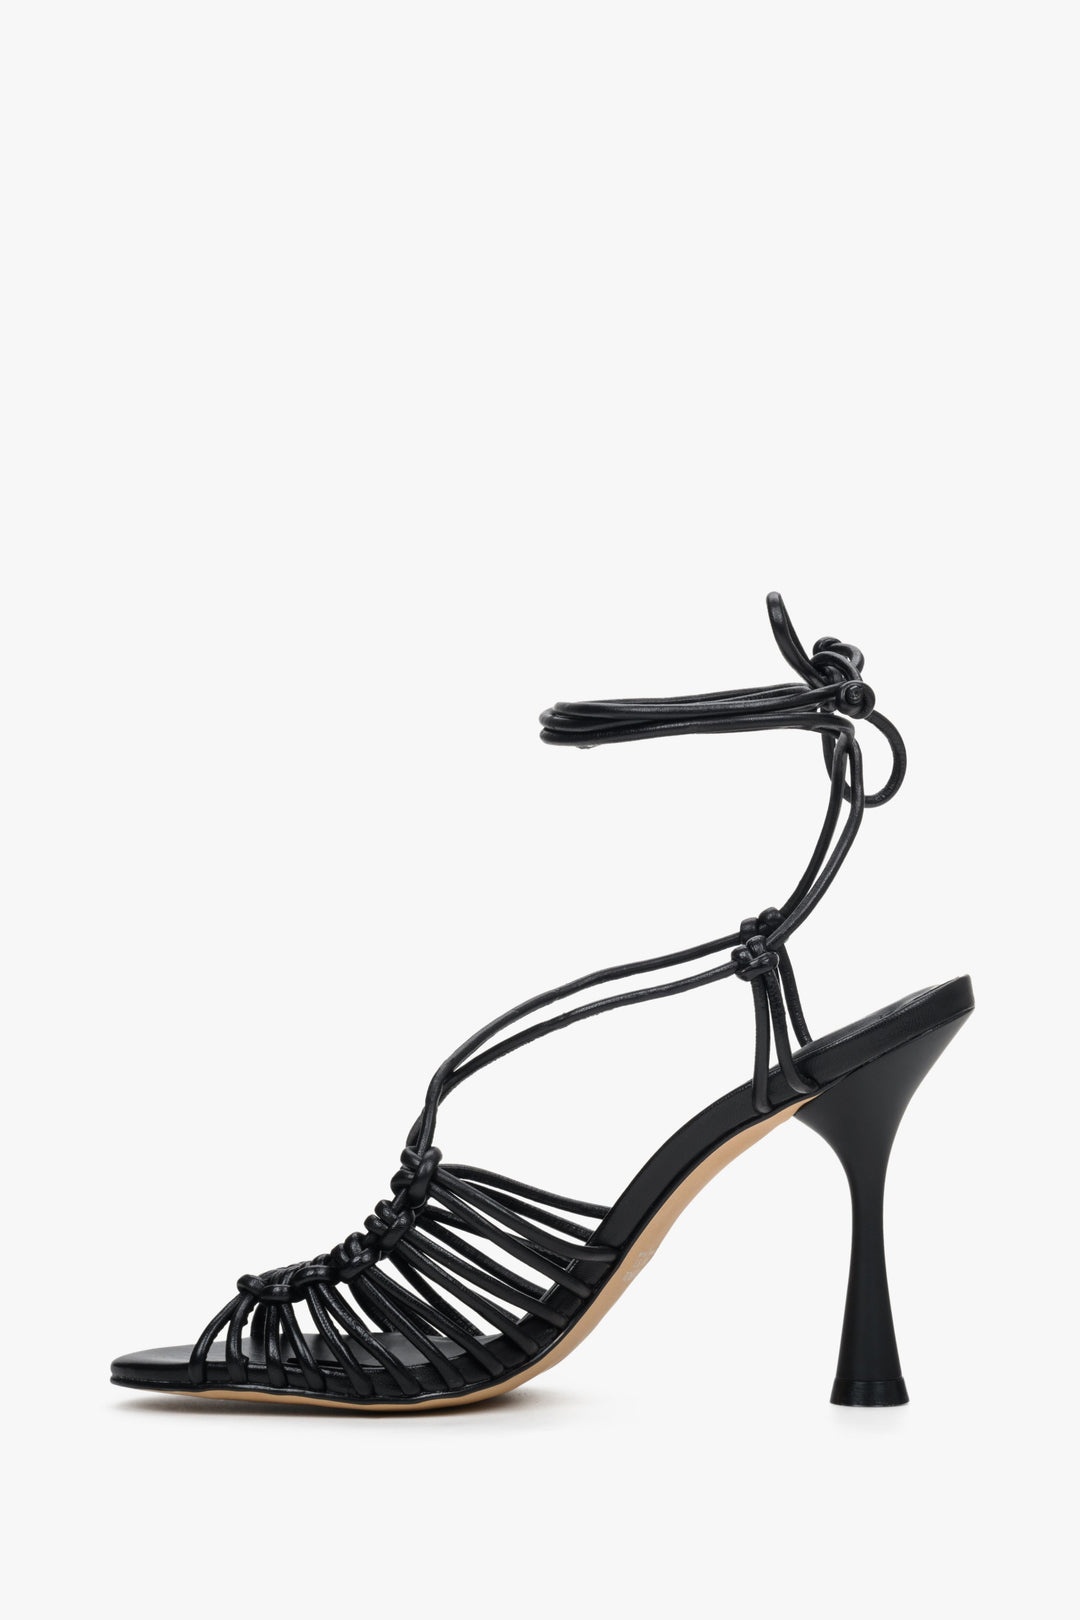 Women's black leather lace-up sandals by Estro - shoe profile.